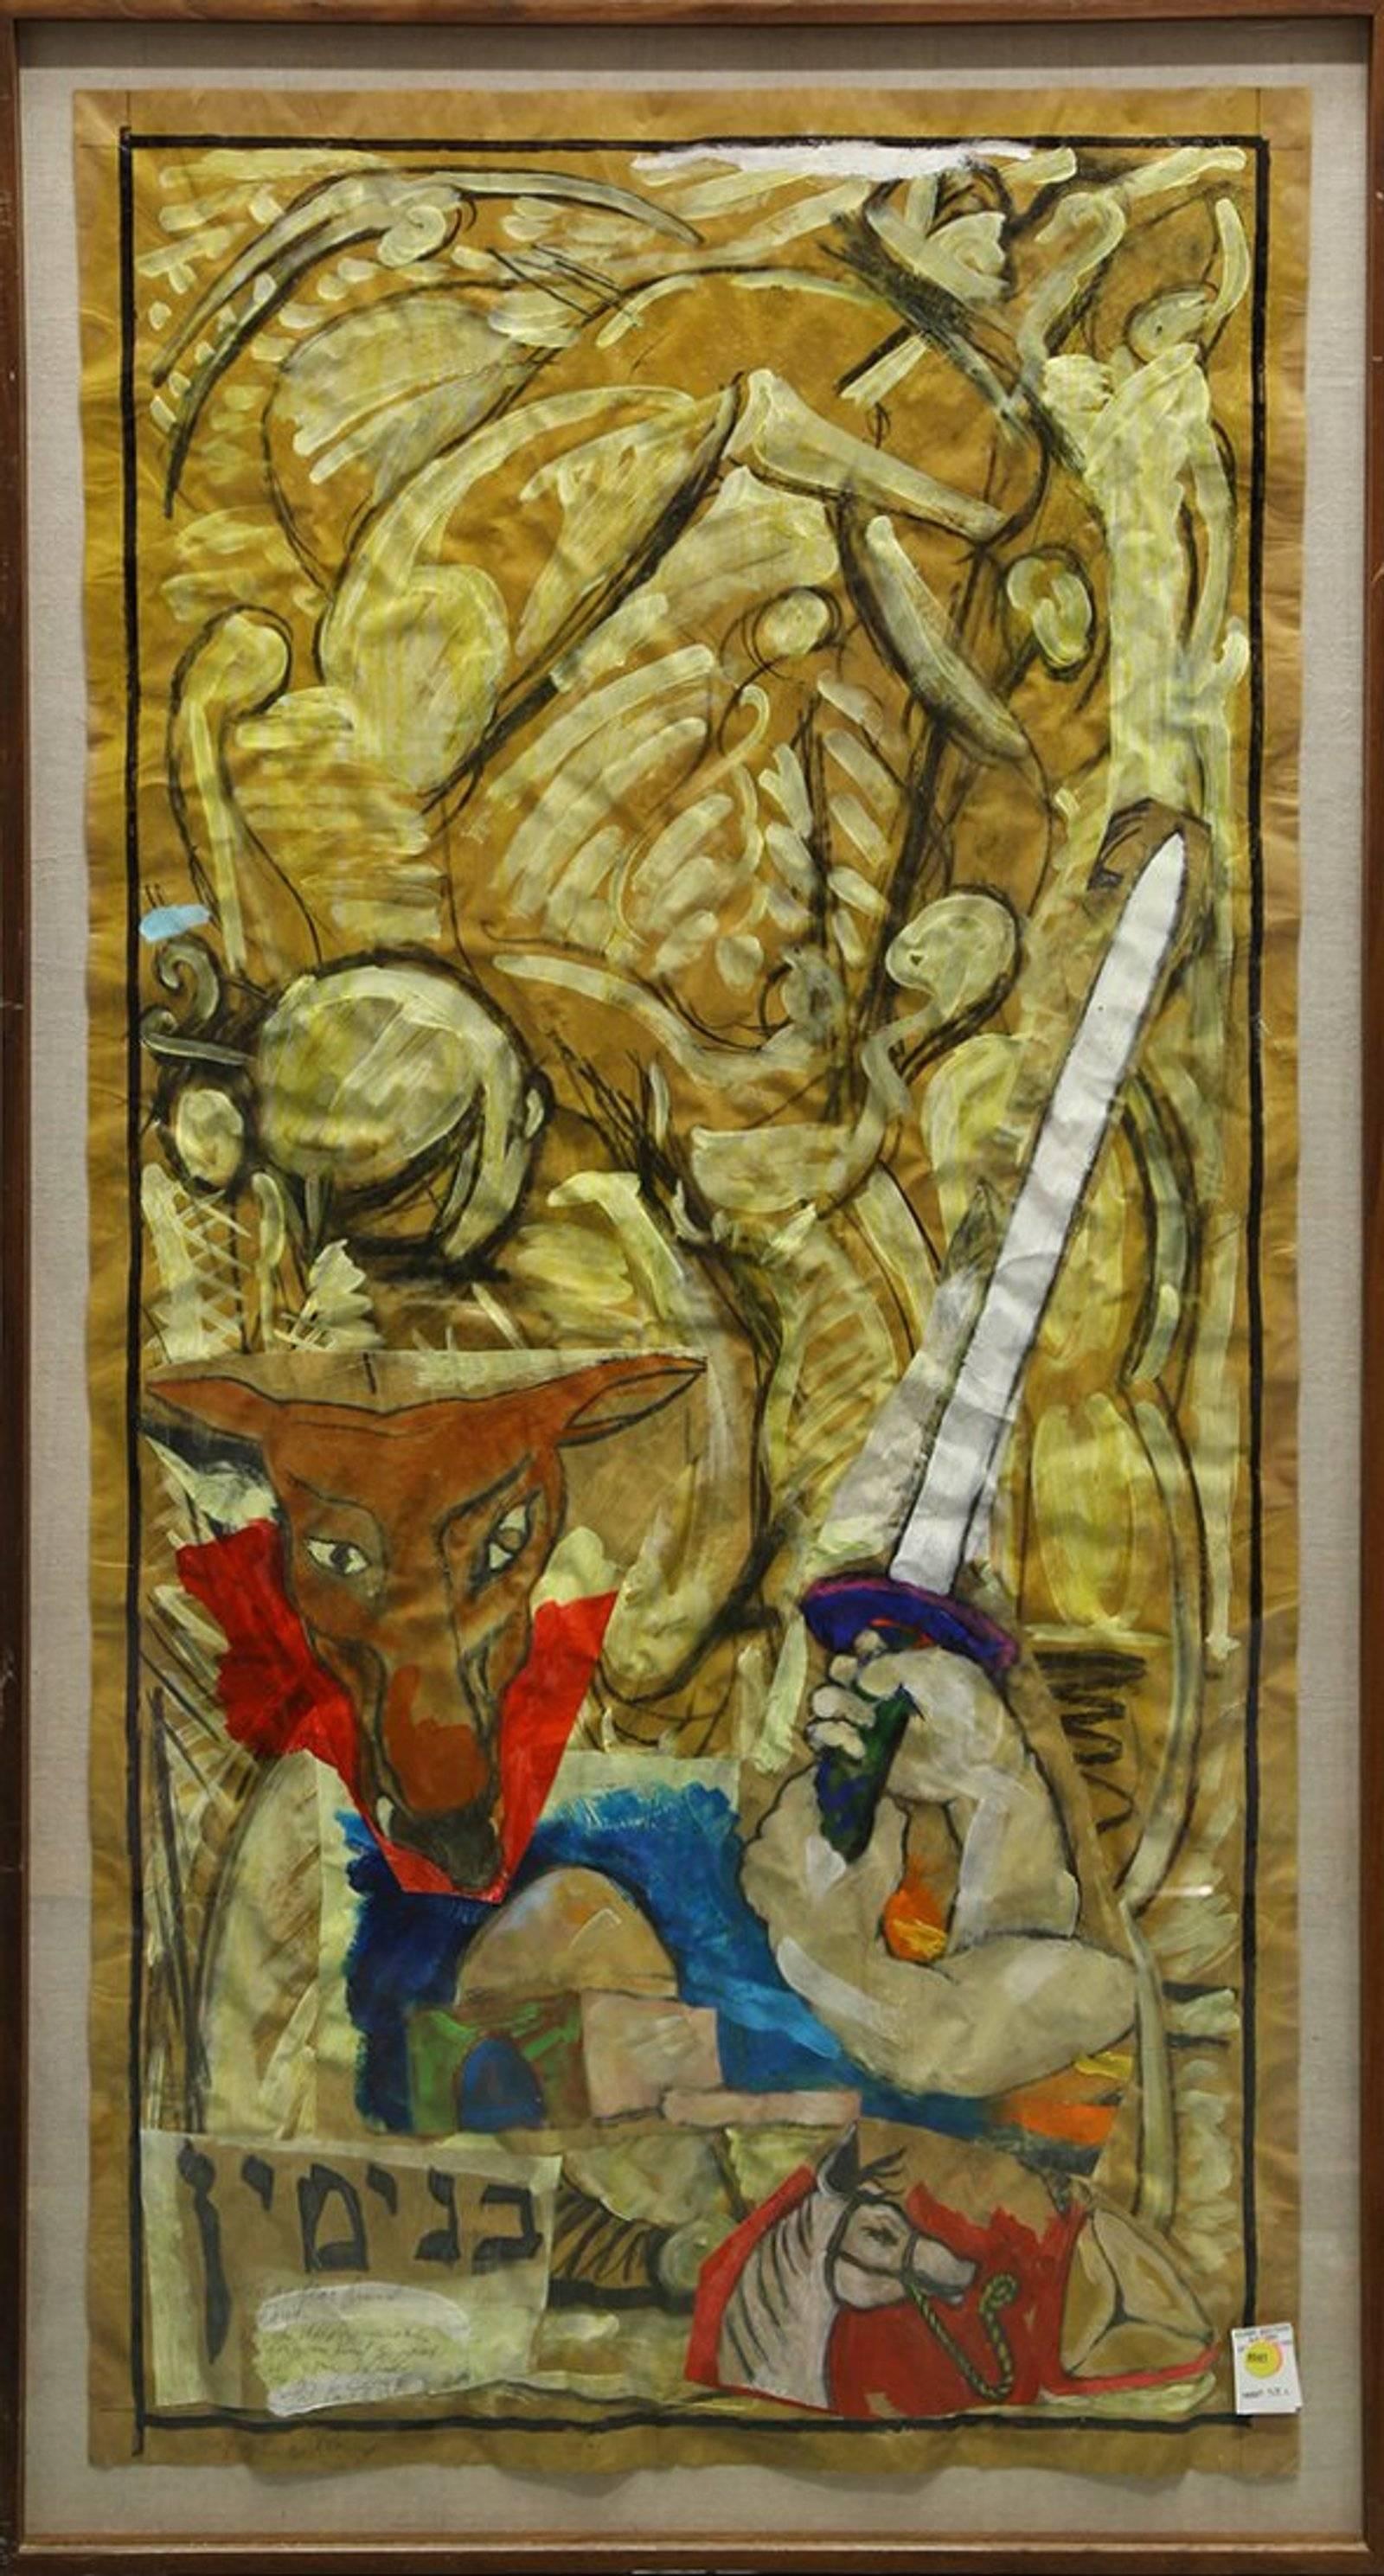 Tribu de Benjamin, grand tableau judaïque de collage en techniques mixtes - Painting de Archie Rand